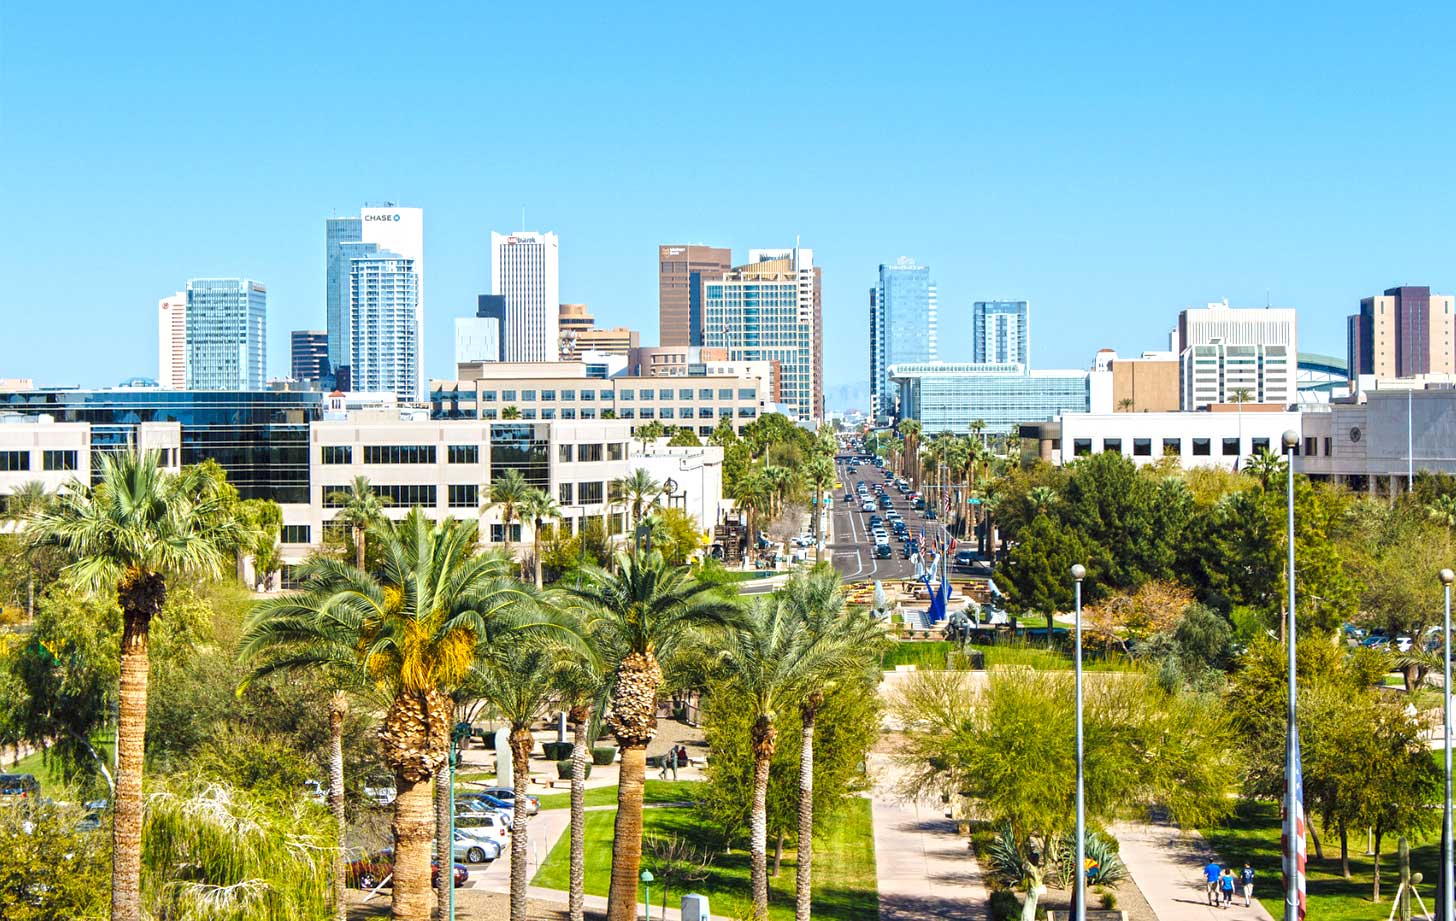 Phoenix City Downtown 
View